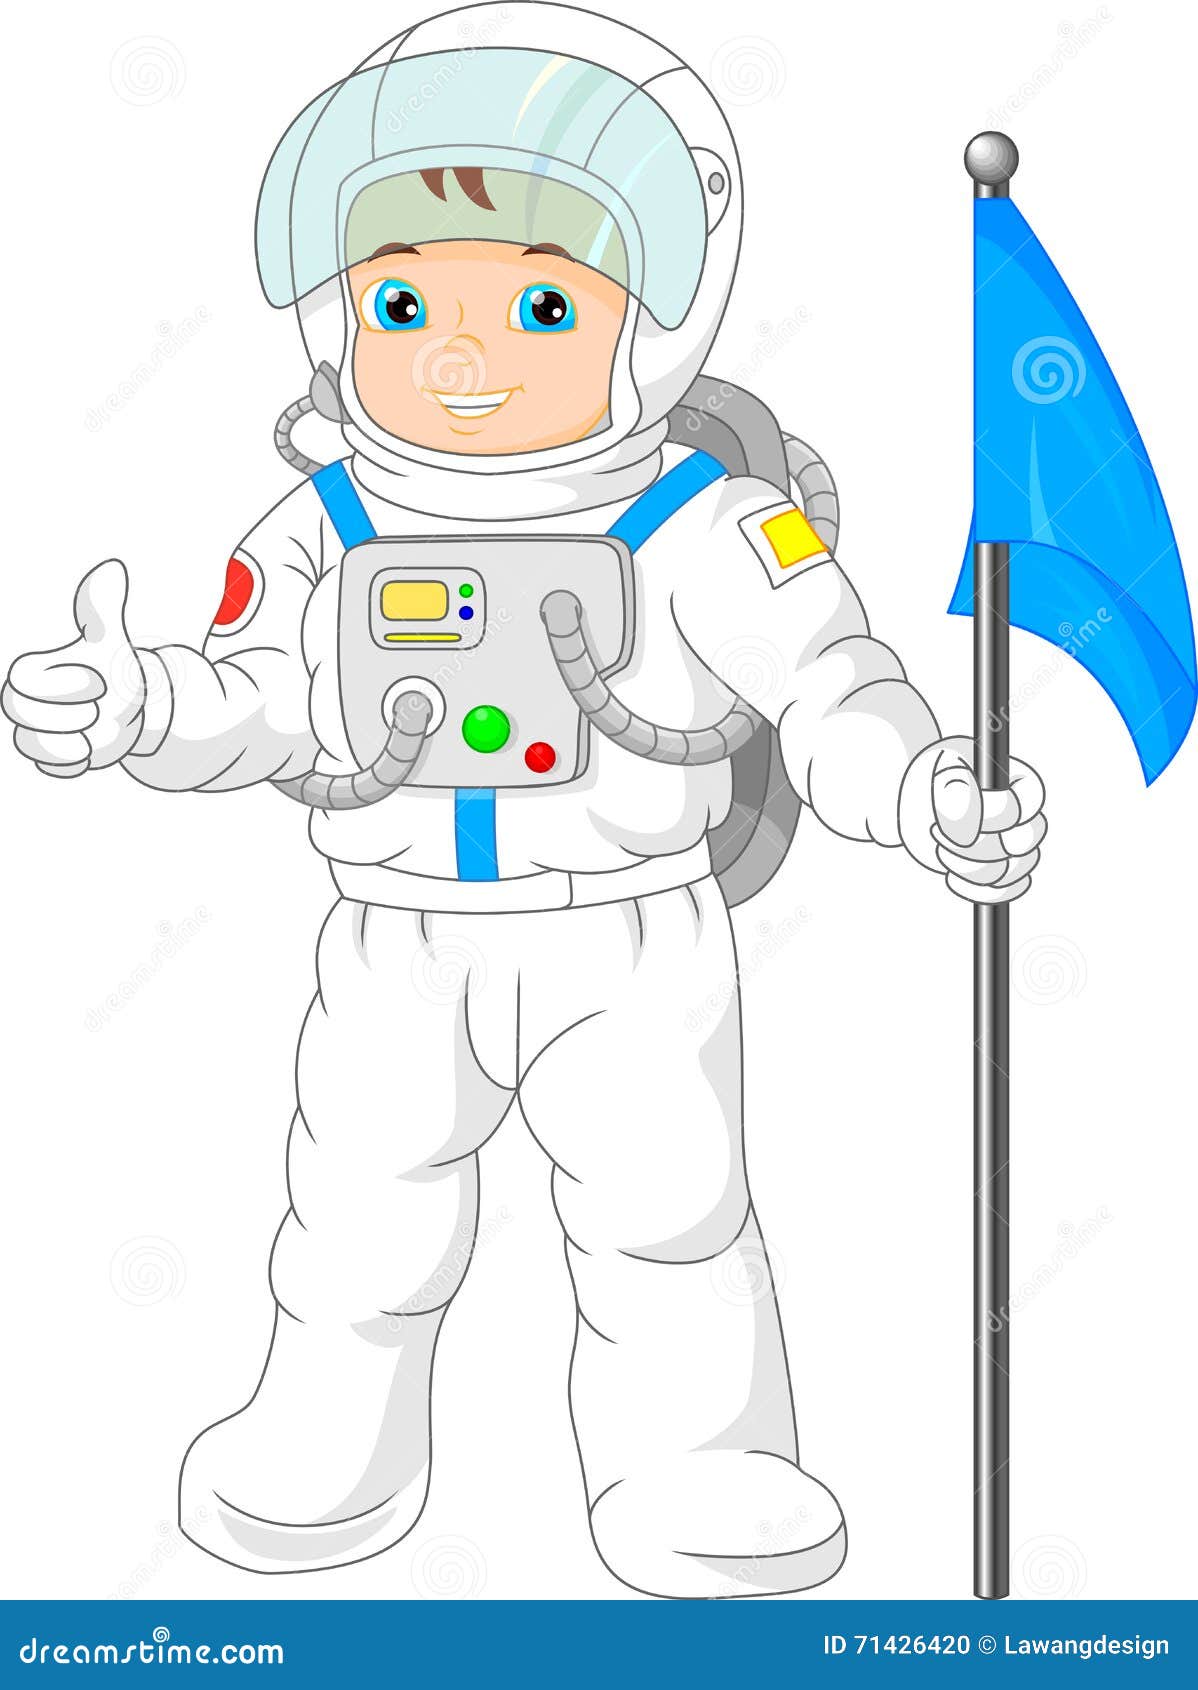 Космонавт картинки для детей дошкольного возраста. Космонавт на прозрачном фоне. Космонавт мультяшный. Космонавт для детей. Космонавт картинка для детей.